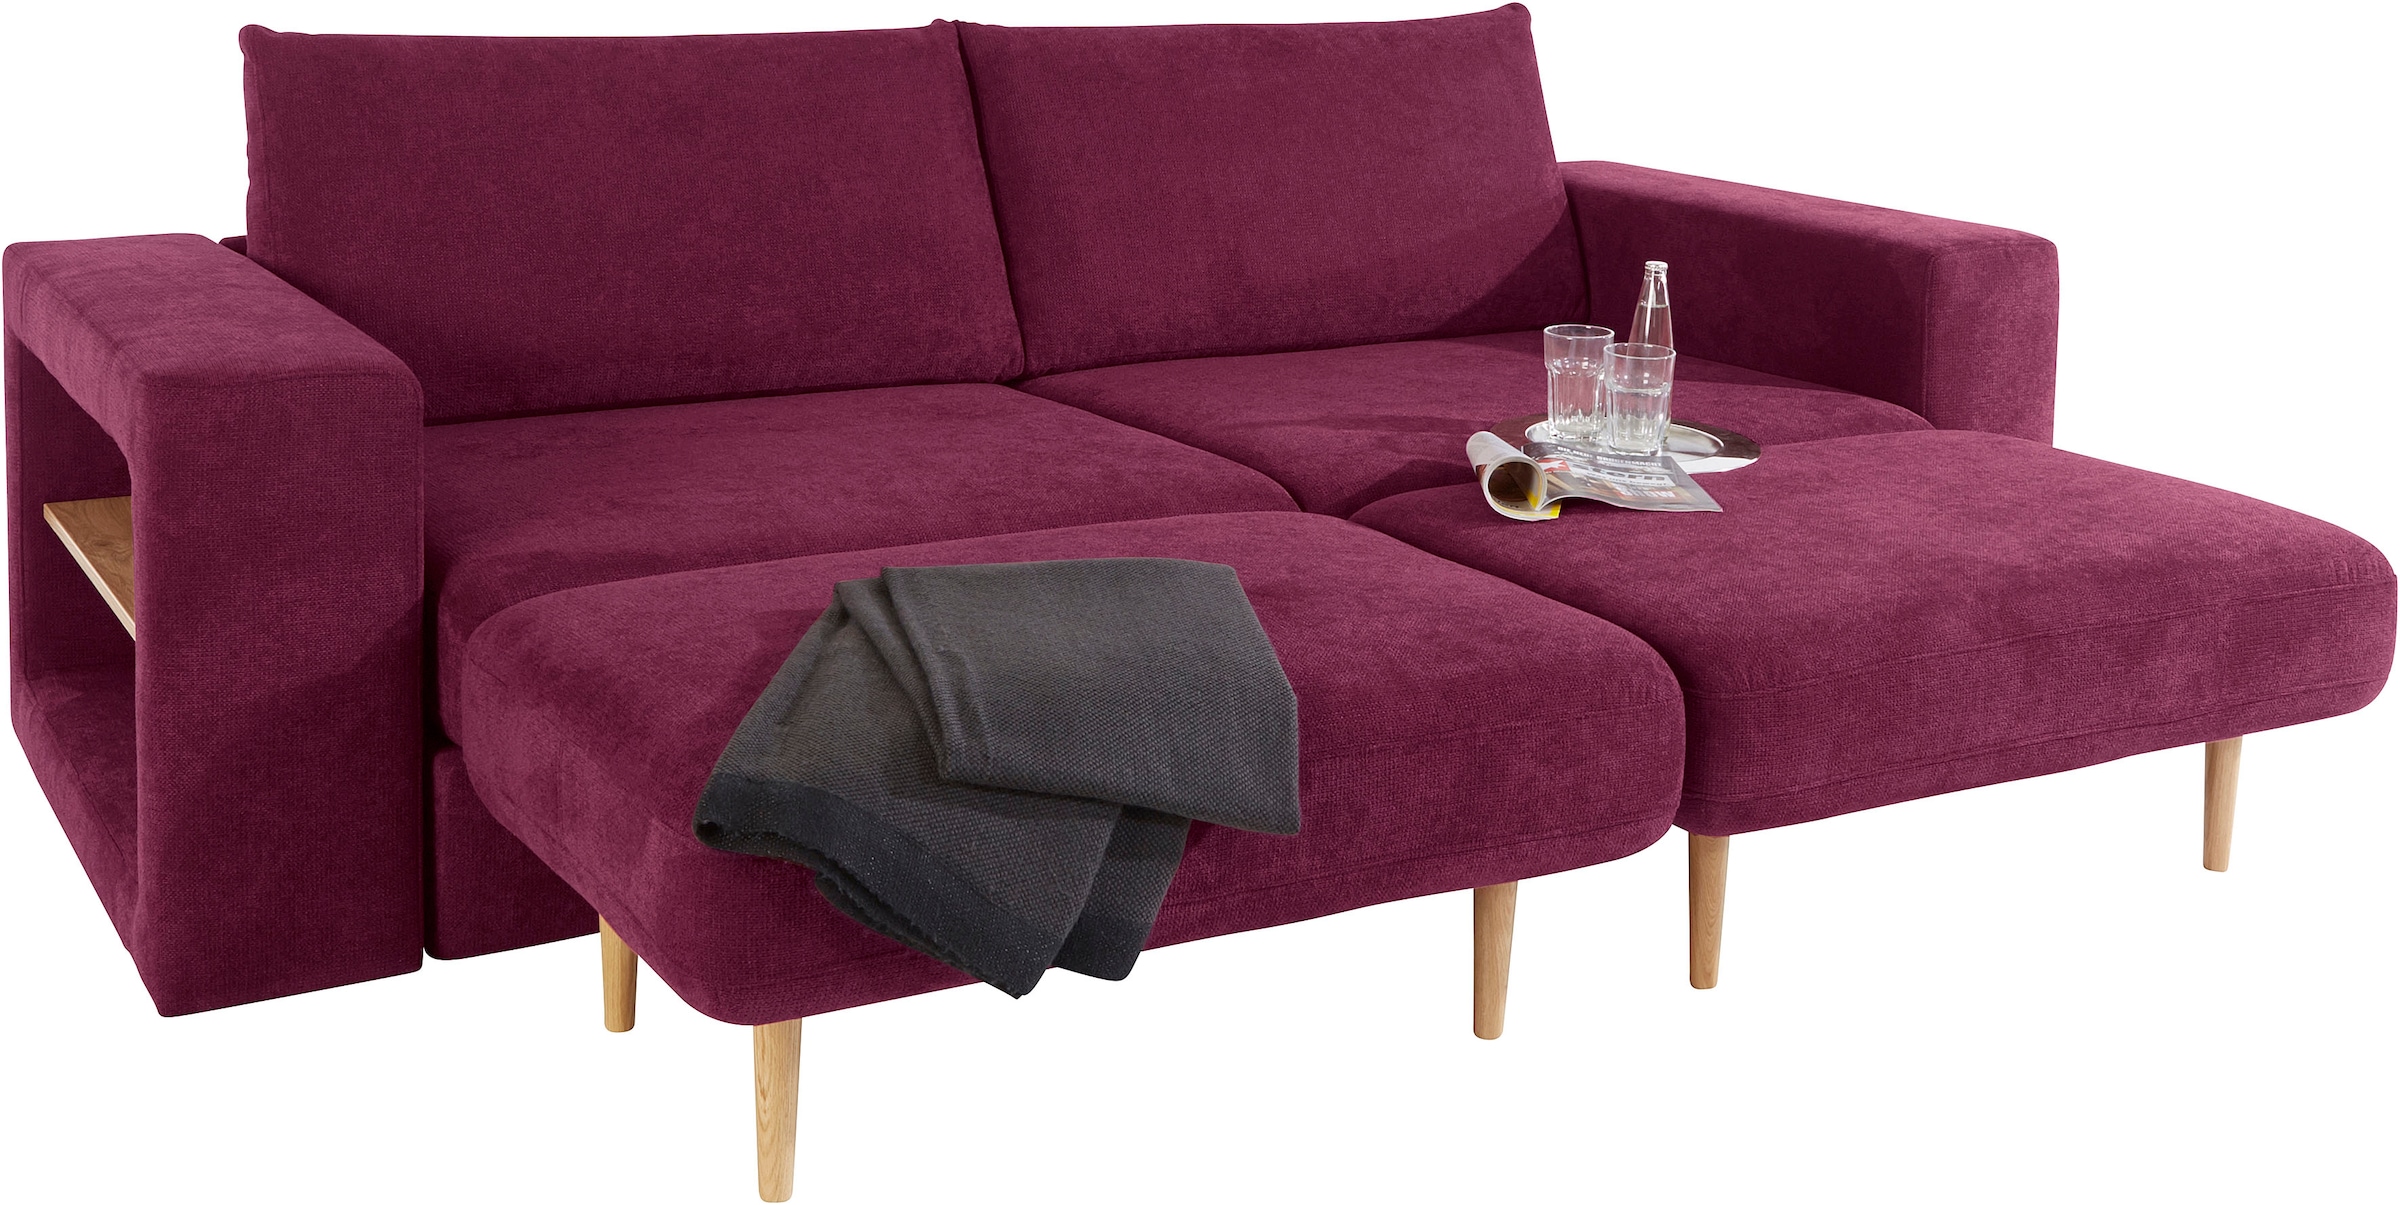 Sofa wird aus Raten »Looksvb«, 4-Sitzer Verwandlungssofa: by Joop bestellen LOOKS auf mit Wolfgang mit Armteilen Hockern, 2 Regalfunktion in beiden Sofa